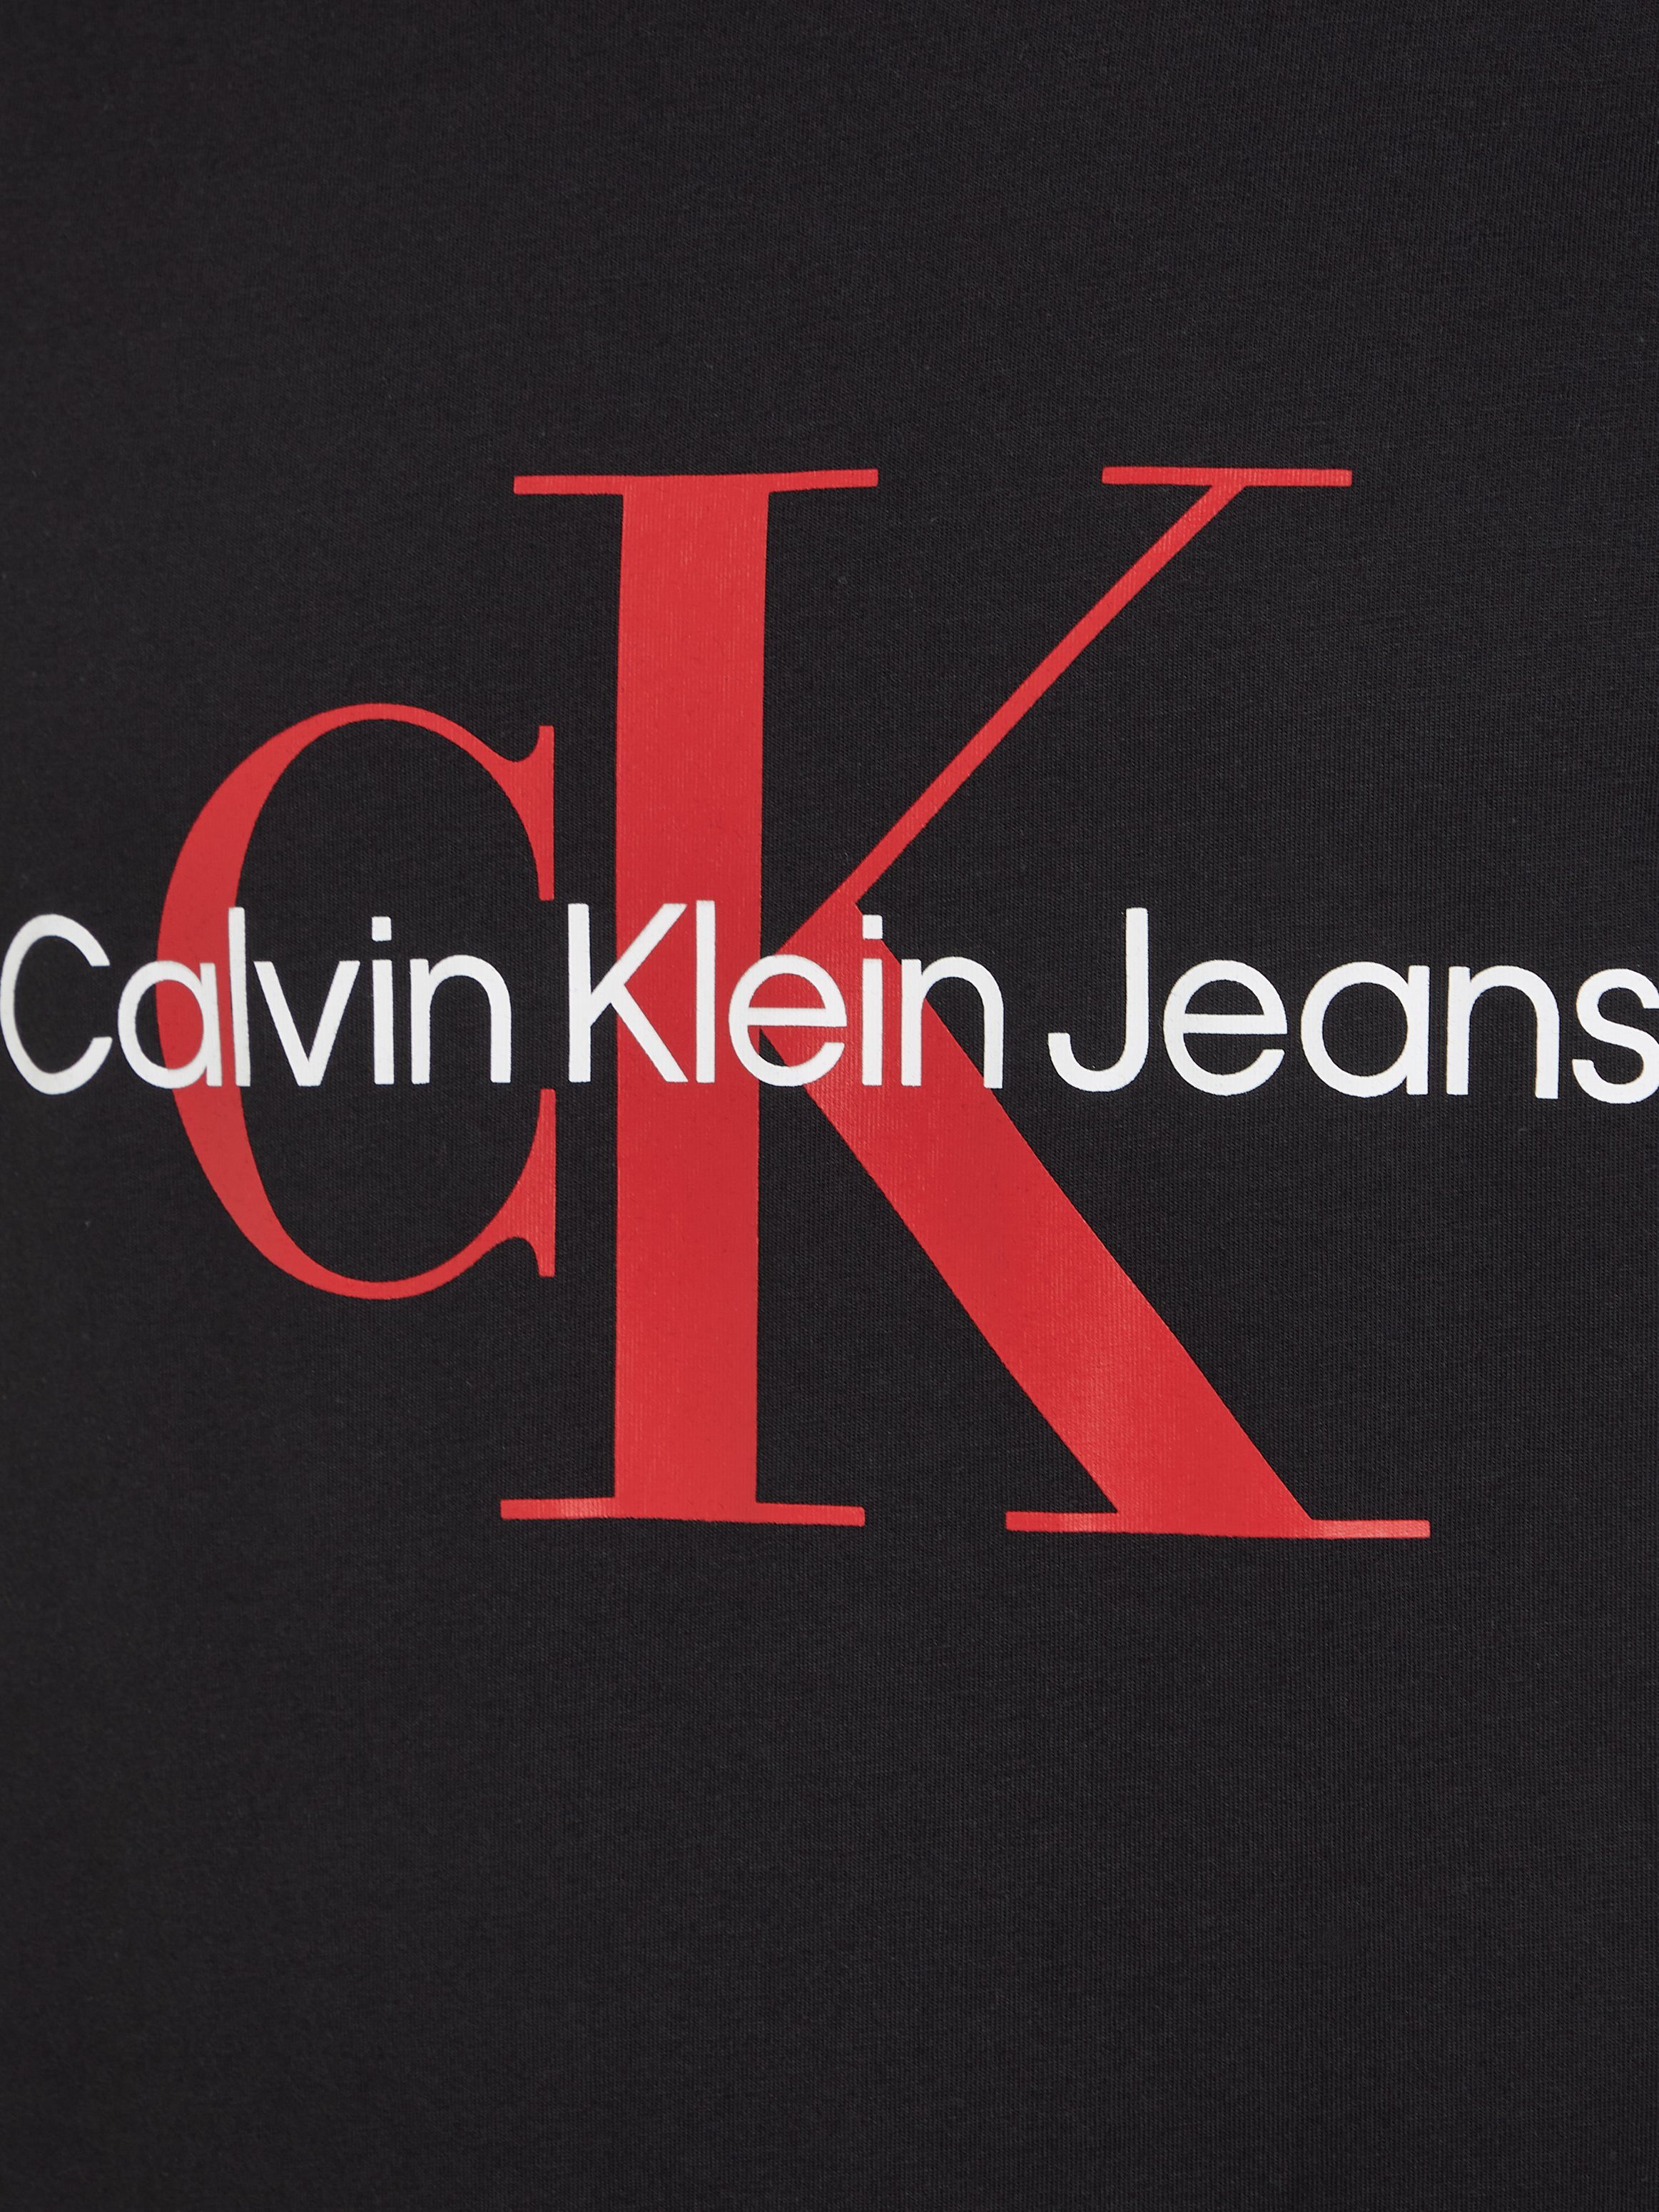 Jeans Calvin Klein T-Shirt